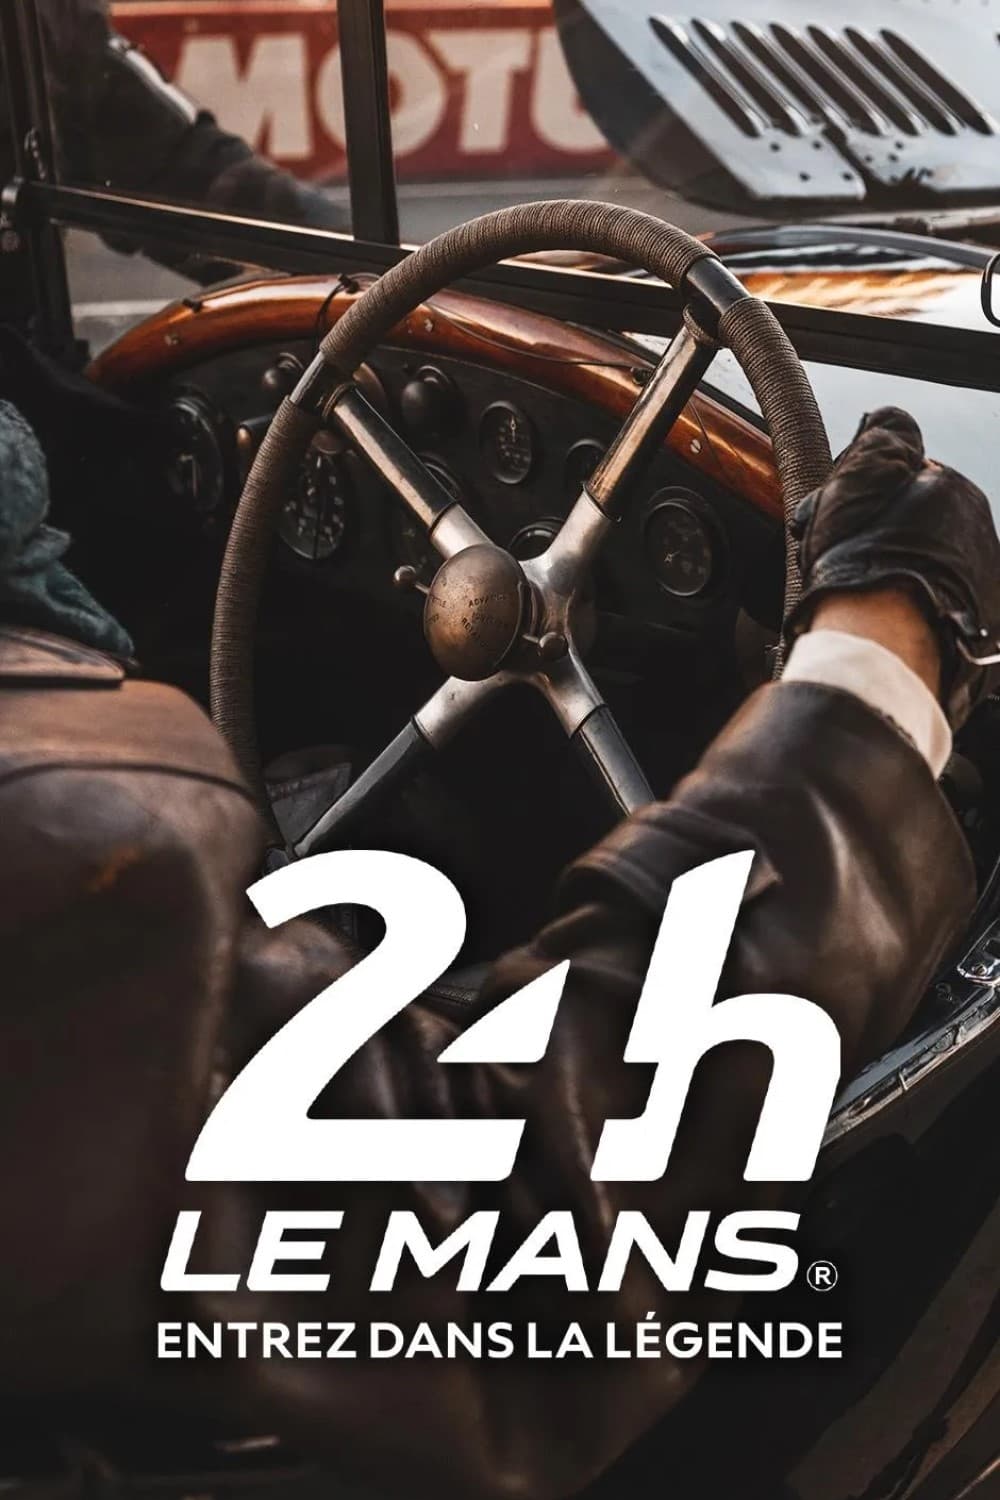 24 h Le Mans, entrez dans la légende!